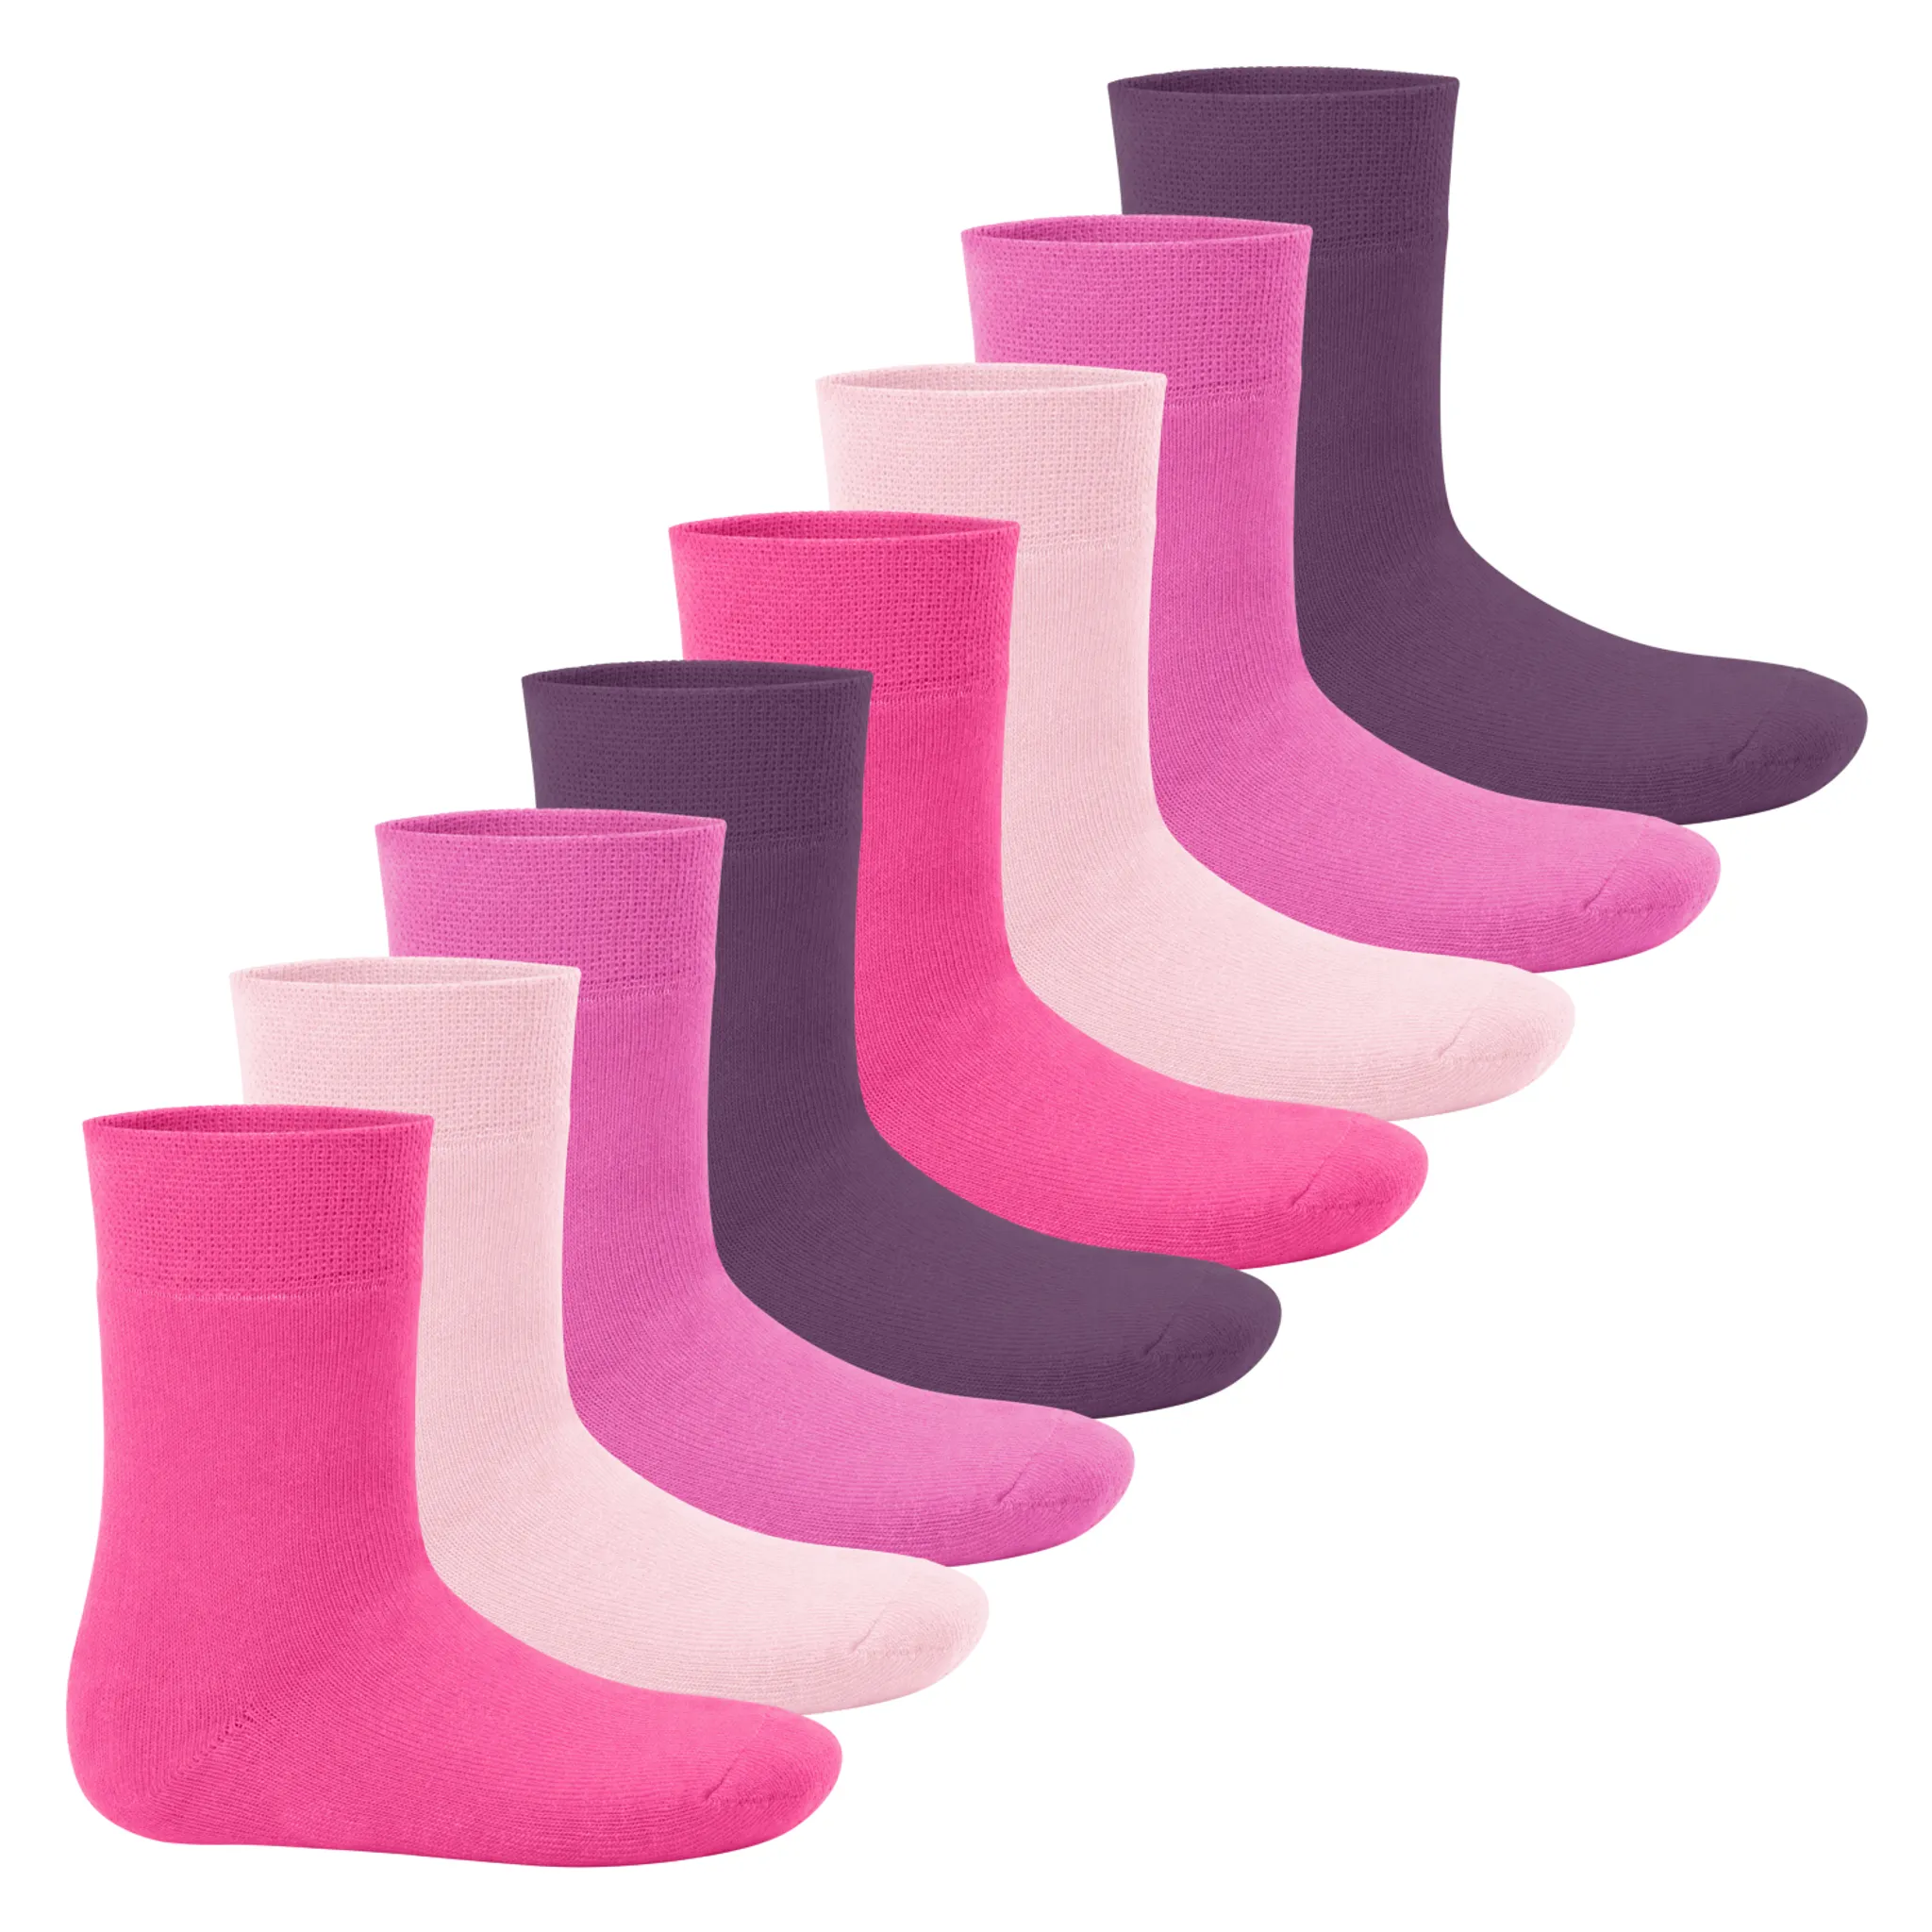 Everyday! Footstar Kinder Socken 10 Paar Mittelhohe Strümpfe für Mädchen und Jungen 